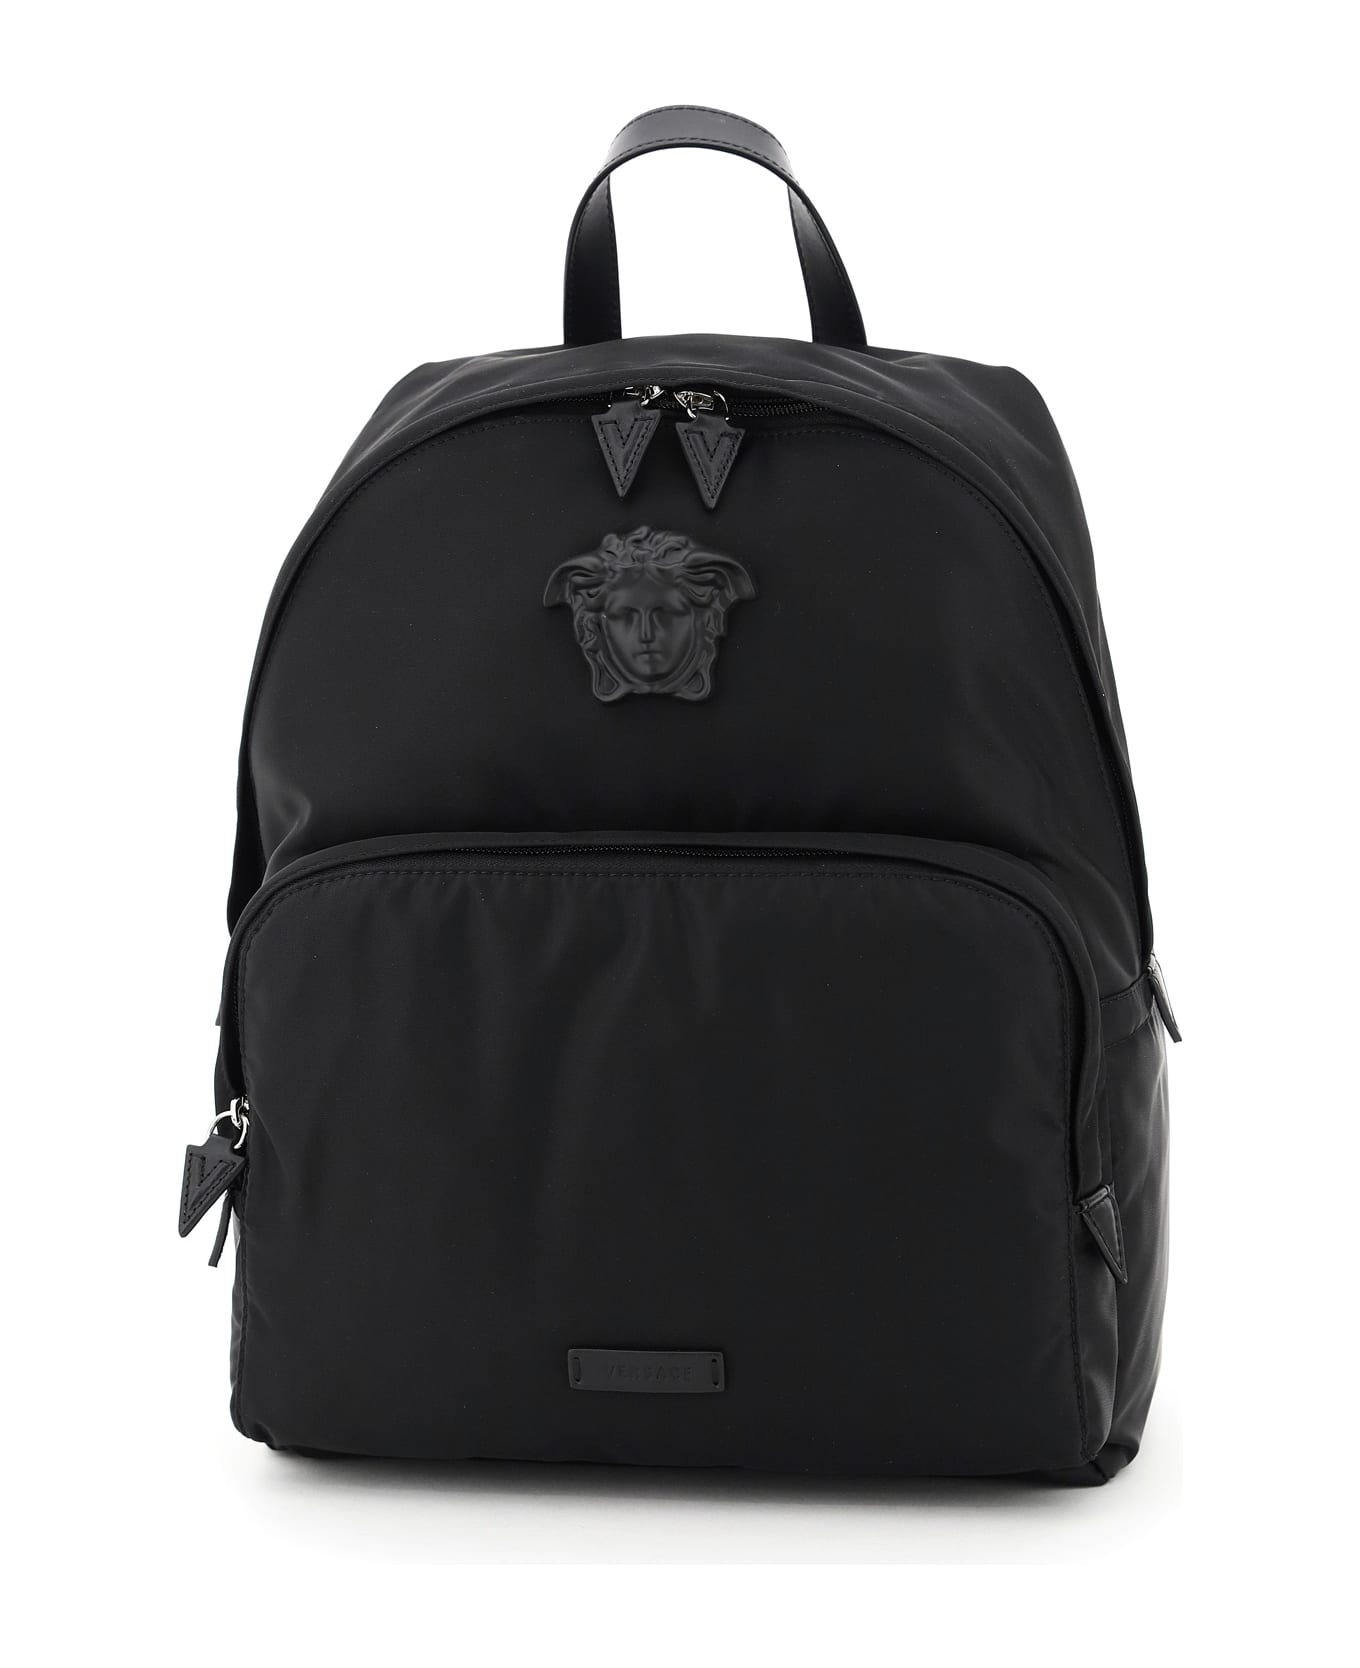 Versace Medusa Nylon Backpack - Black